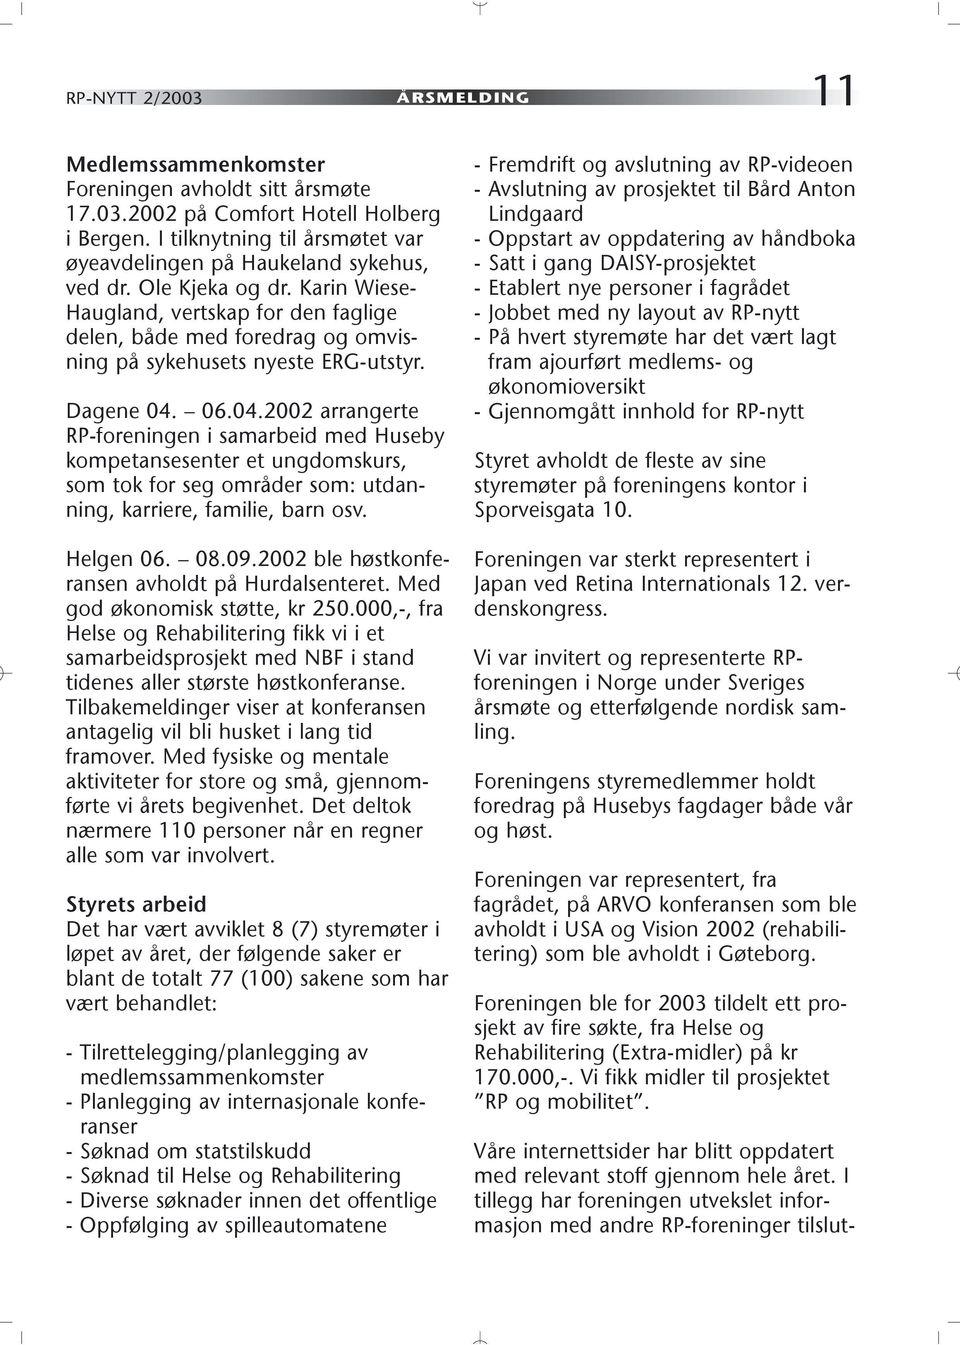 Karin Wiese- Haugland, vertskap for den faglige delen, både med foredrag og omvisning på sykehusets nyeste ERG-utstyr. Dagene 04.